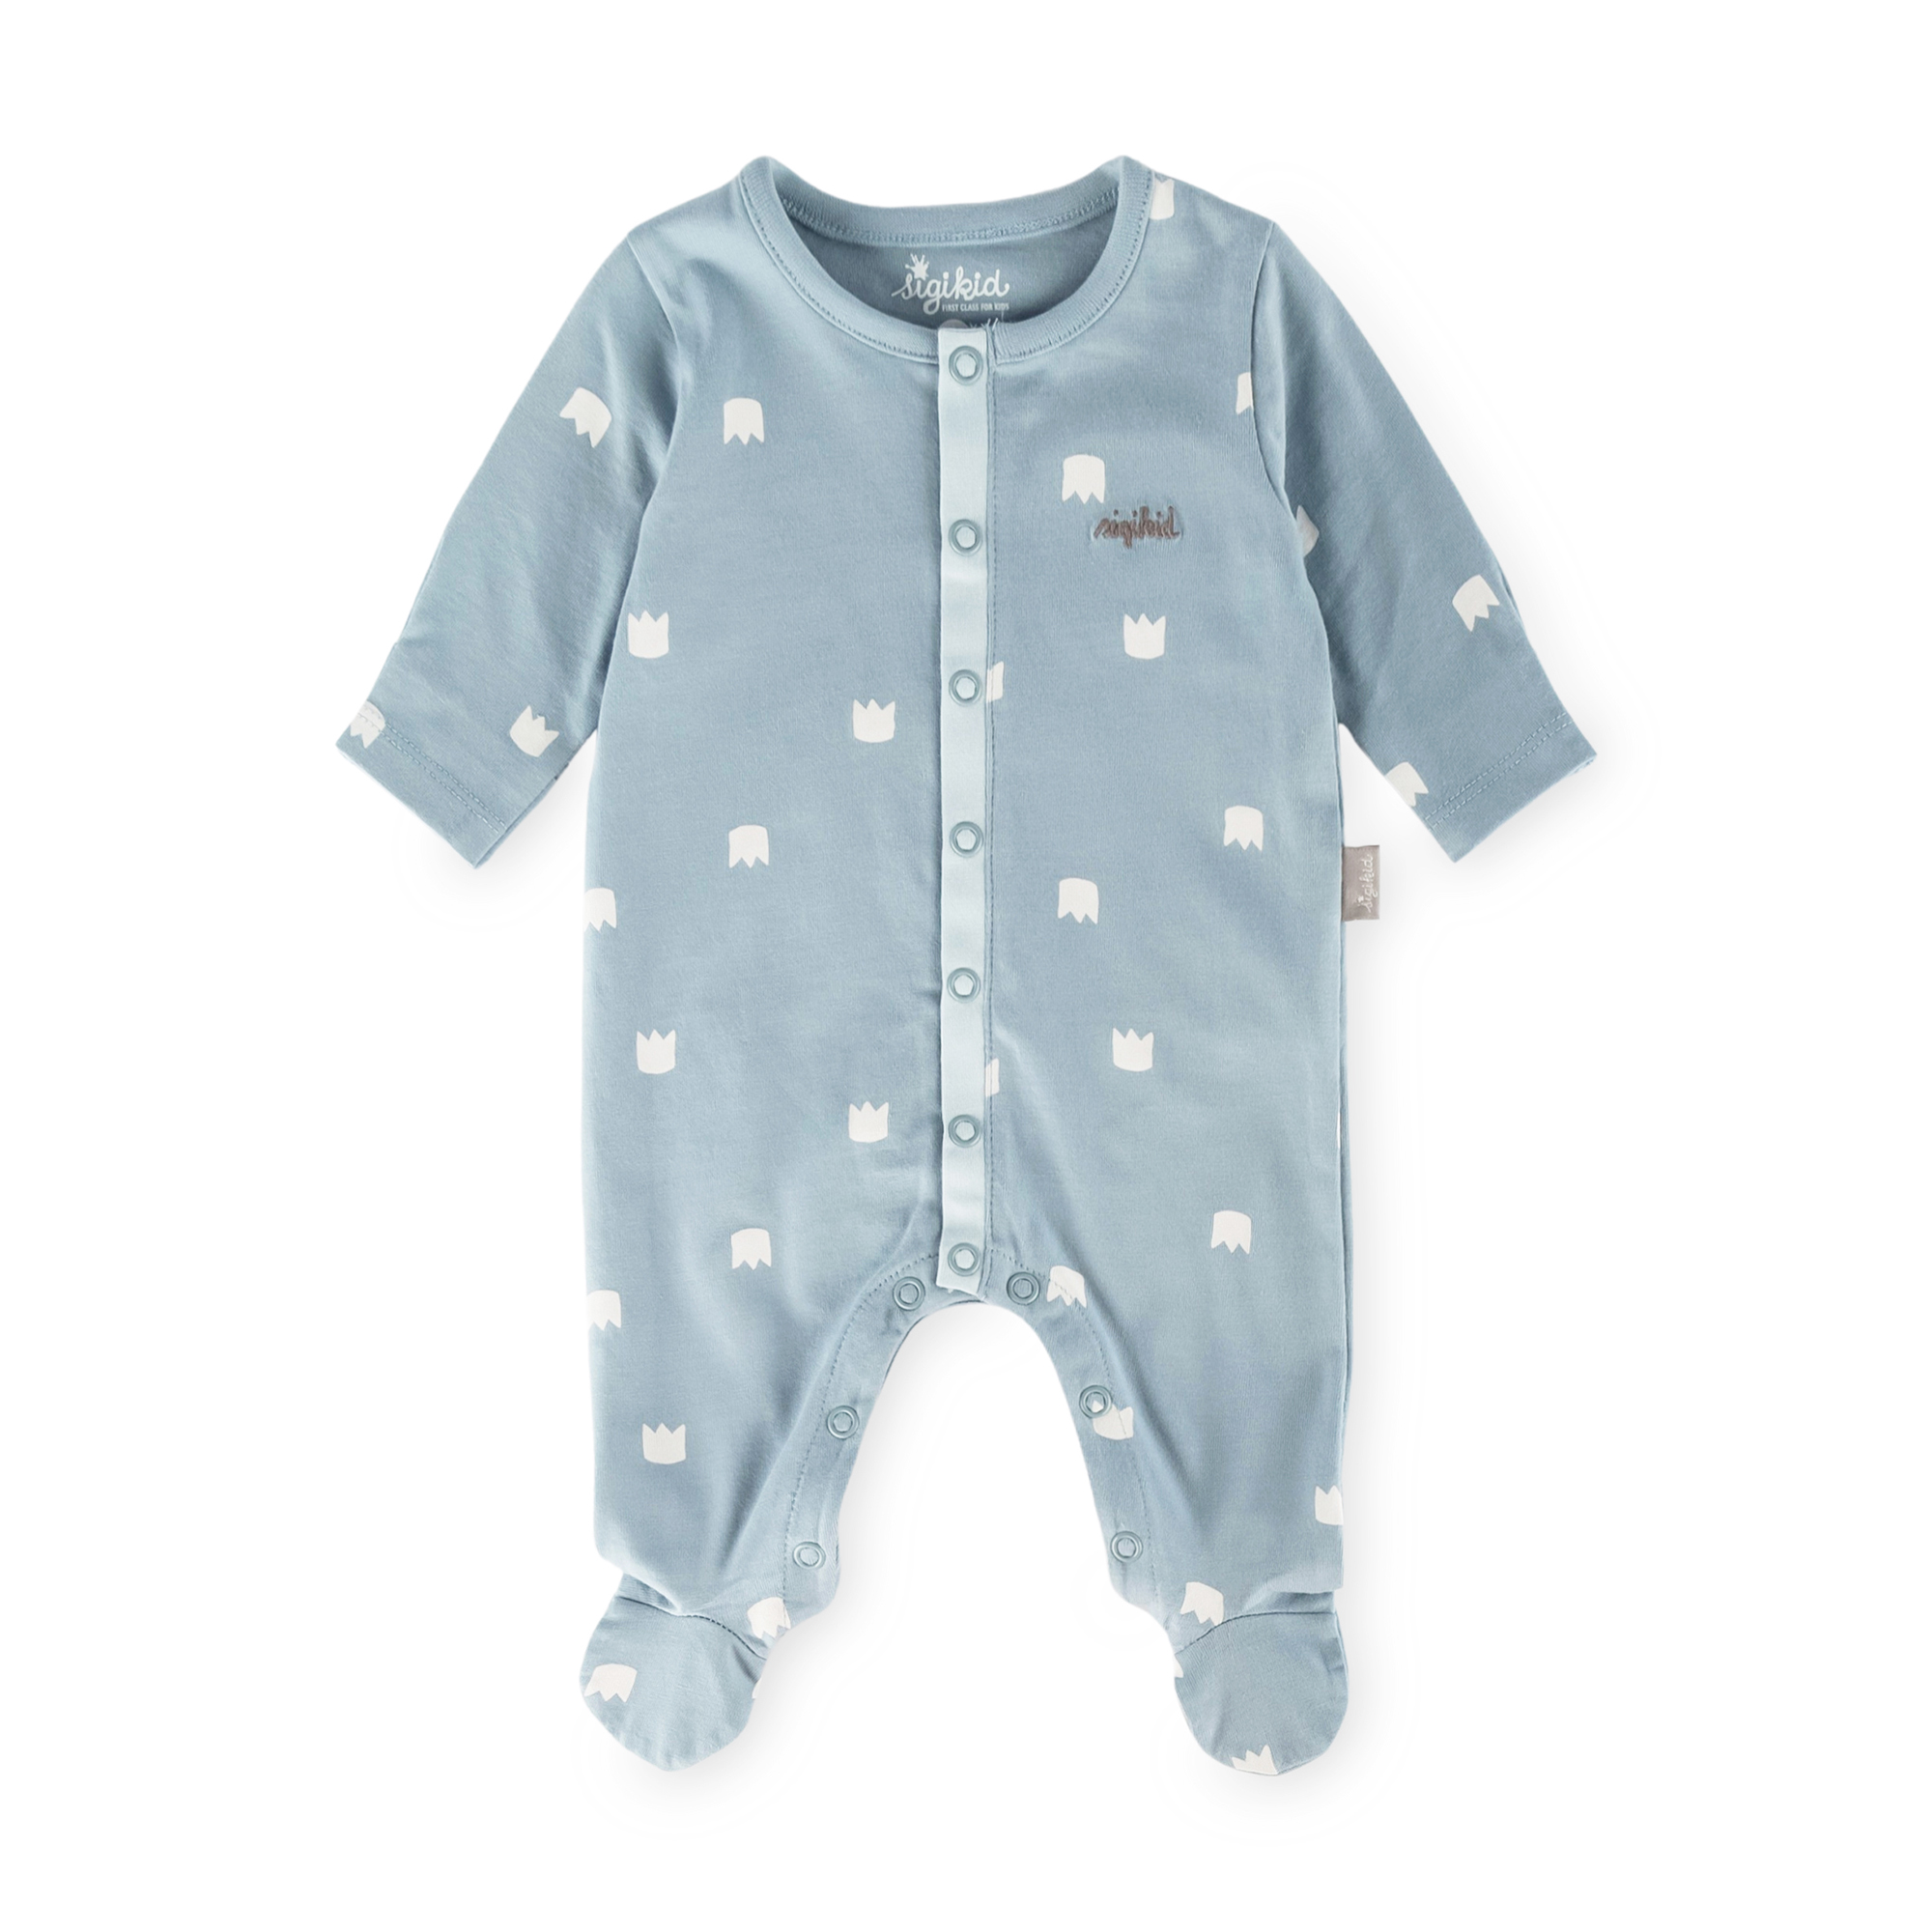 Newborn baby footed onesie romper blue, foldover mittens